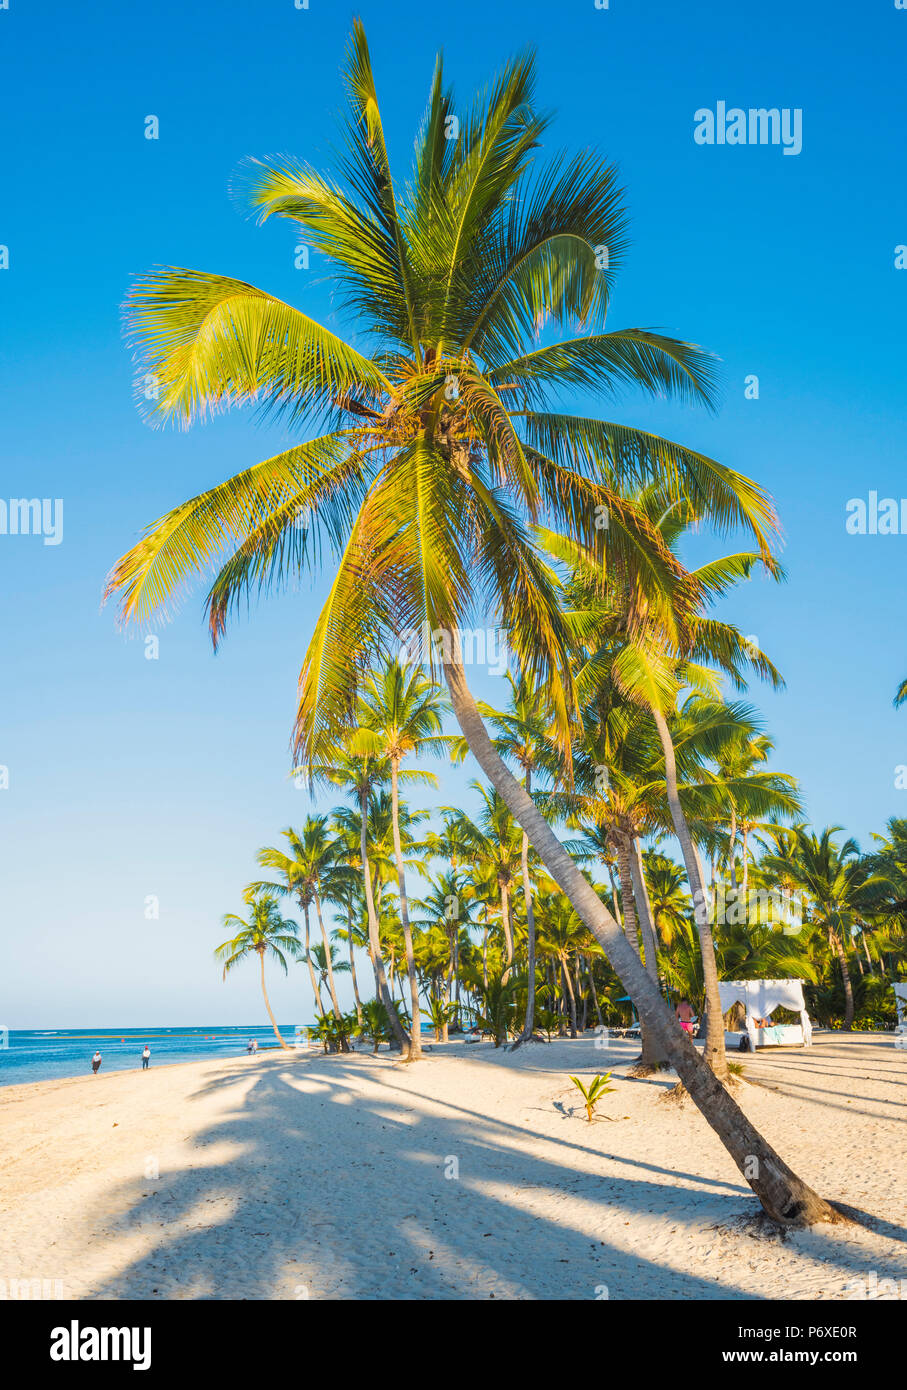 Cabeza de Toro beach, Punta Cana, Dominican Republic. Stock Photo